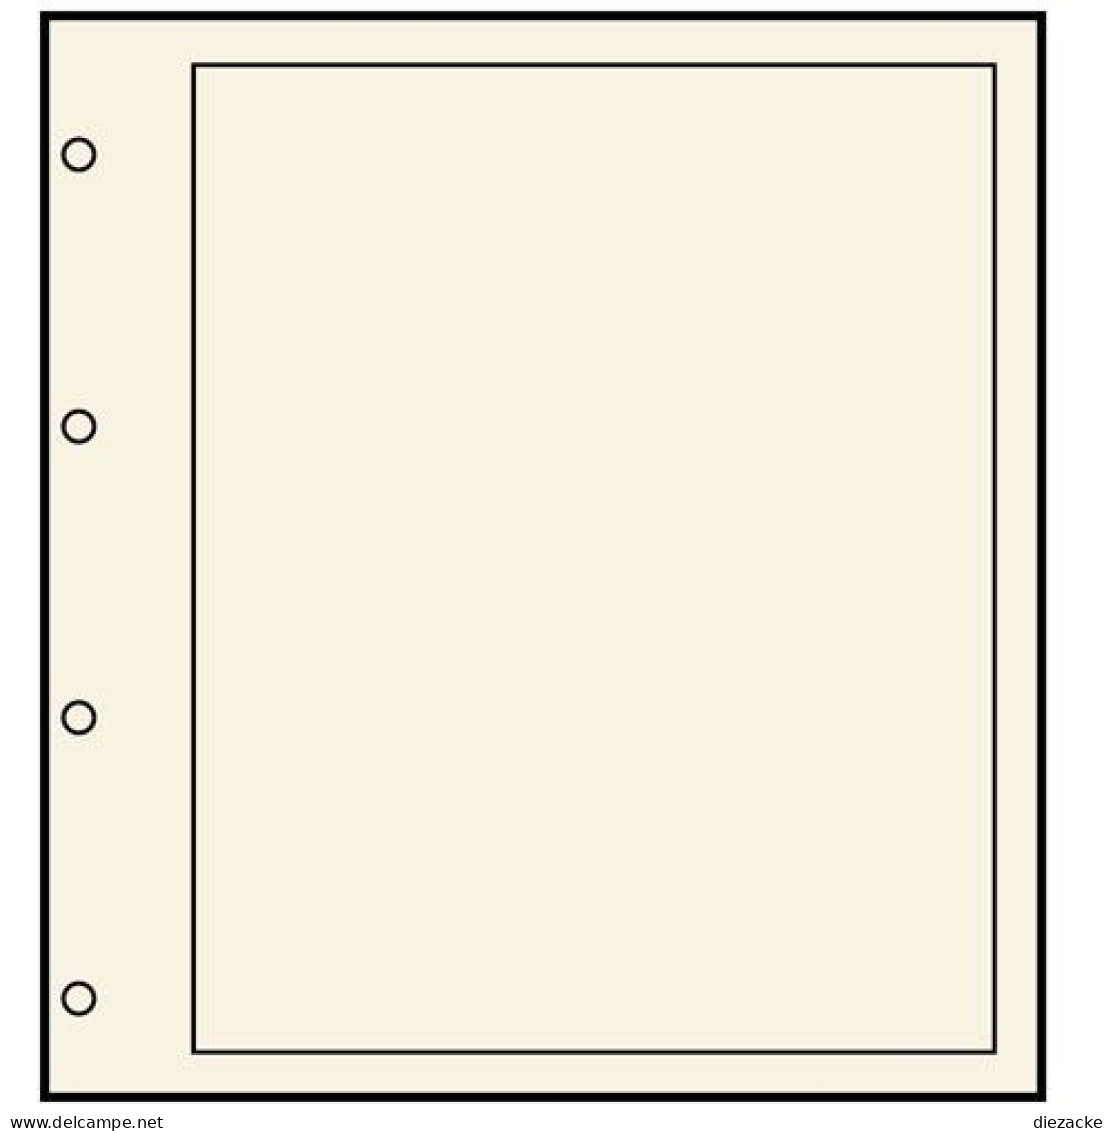 Safe Compact A4-Blankoblatt Nr. 504 Weiß Mit Lochung Und Rand, 10er Pack Neu ( - Blank Pages